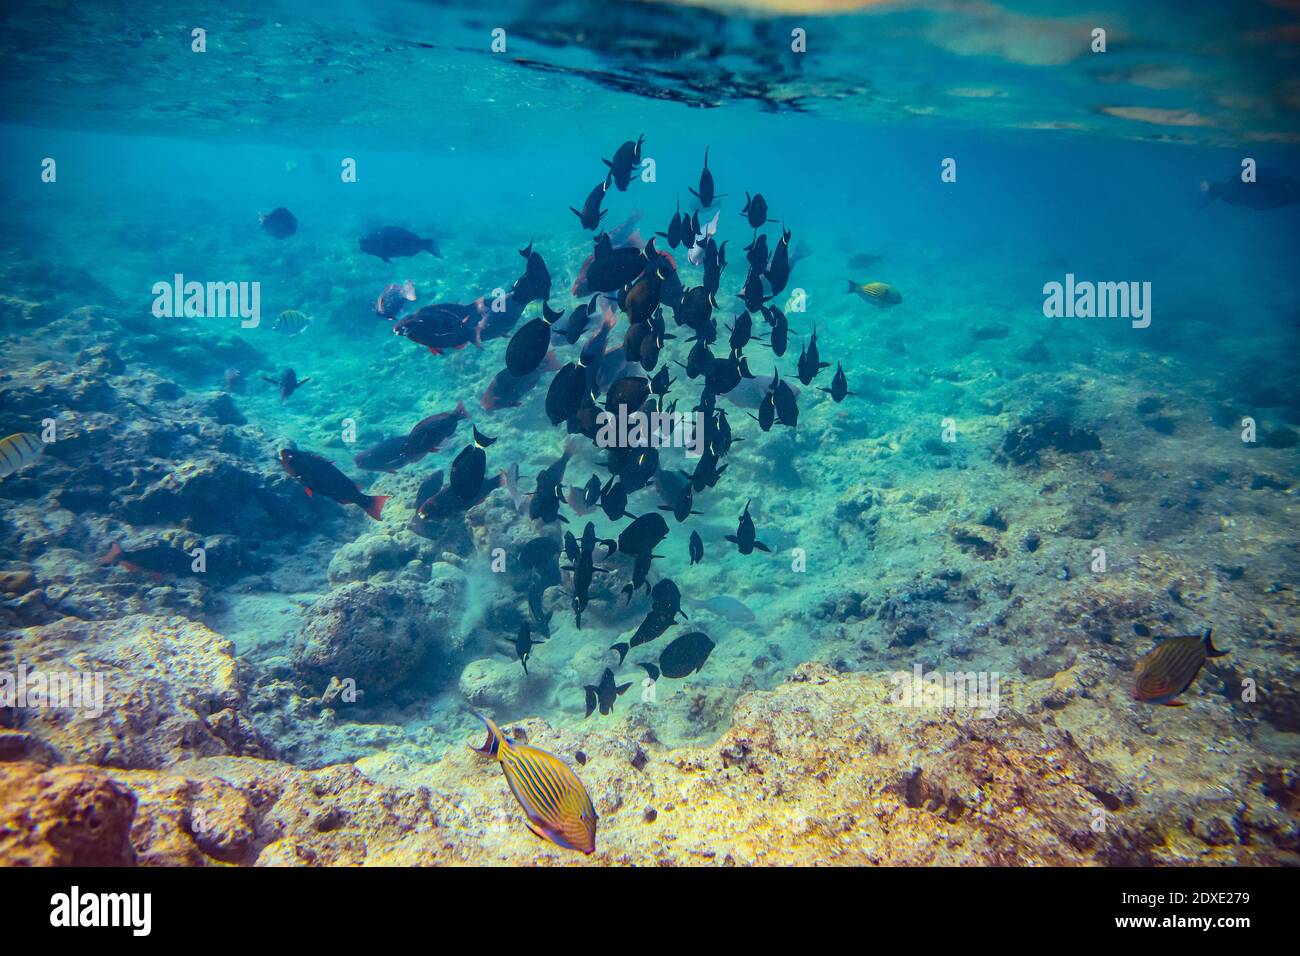 Unterwasseransicht der Schule der Fische, die im klaren Wasser schwimmen Des Arabischen Meeres Stockfoto